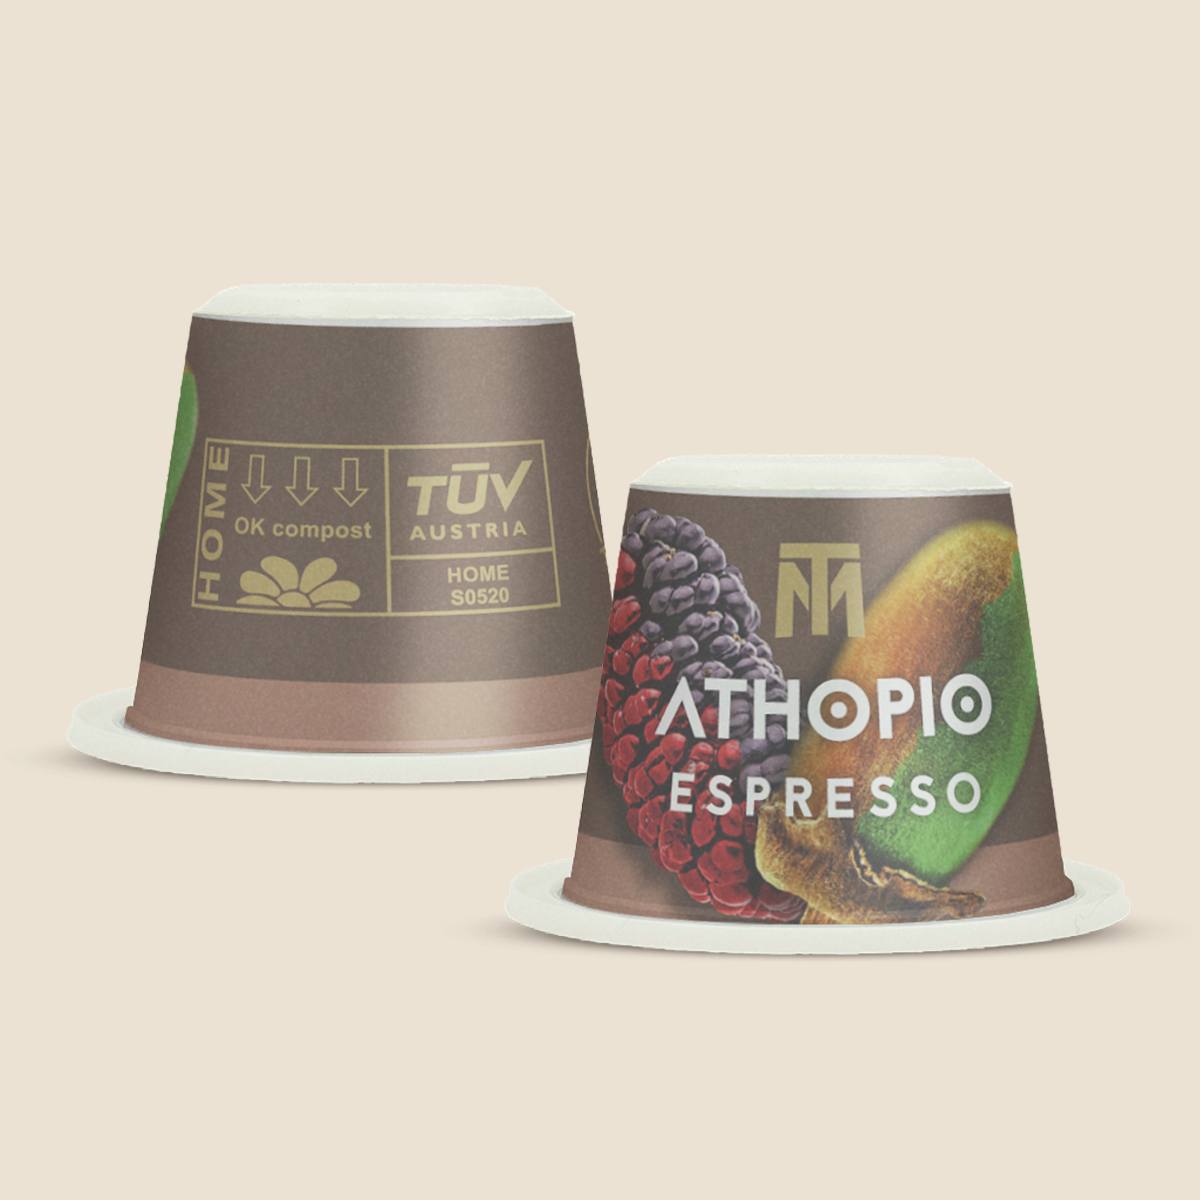 ATHOPIO Espresso capsules de café bio Fair Trade